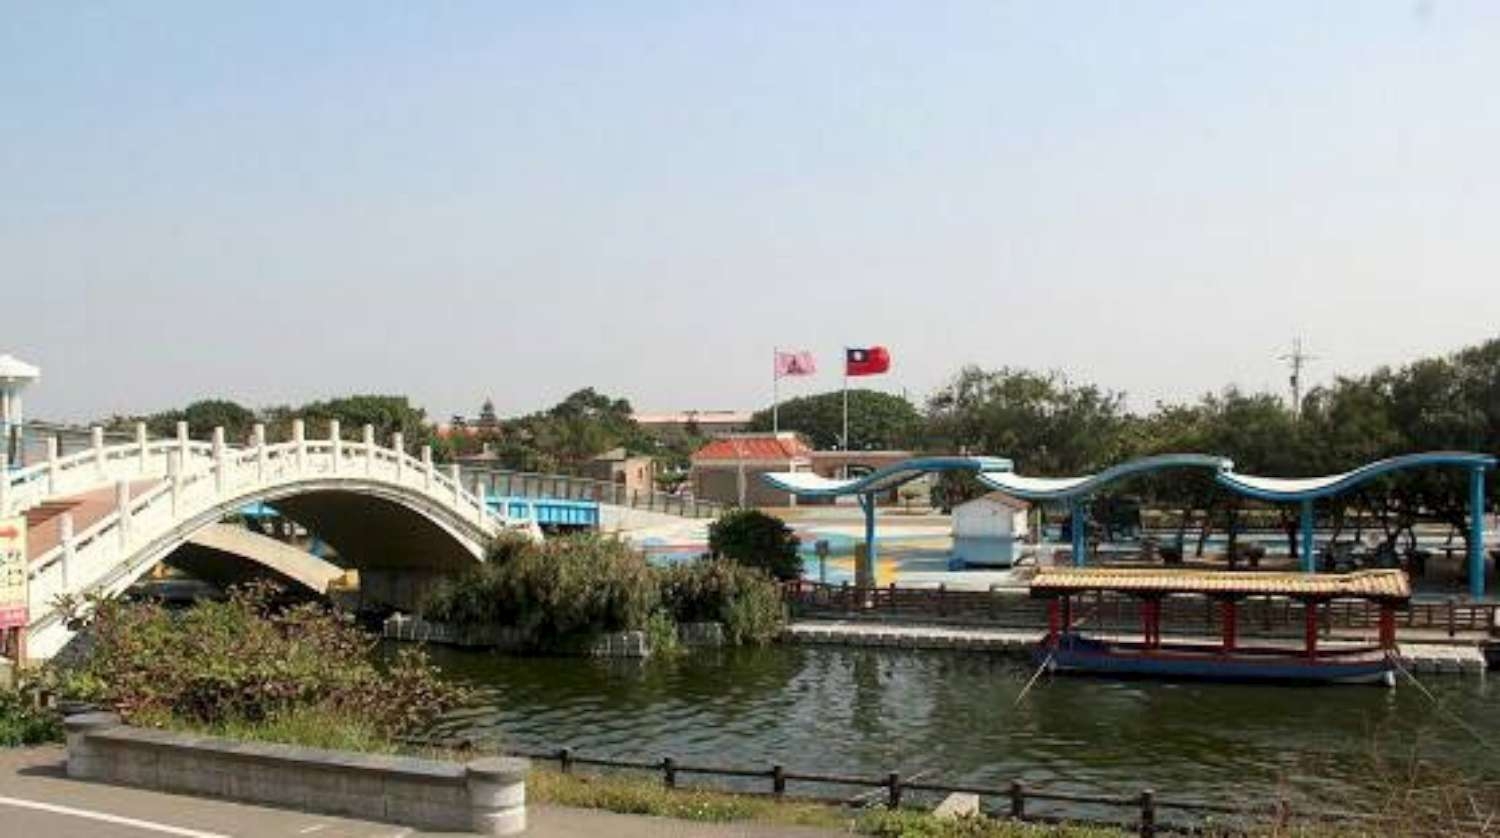 獲前瞻肯定 港南運河景觀設施再升級 規劃引進獨木舟等活動